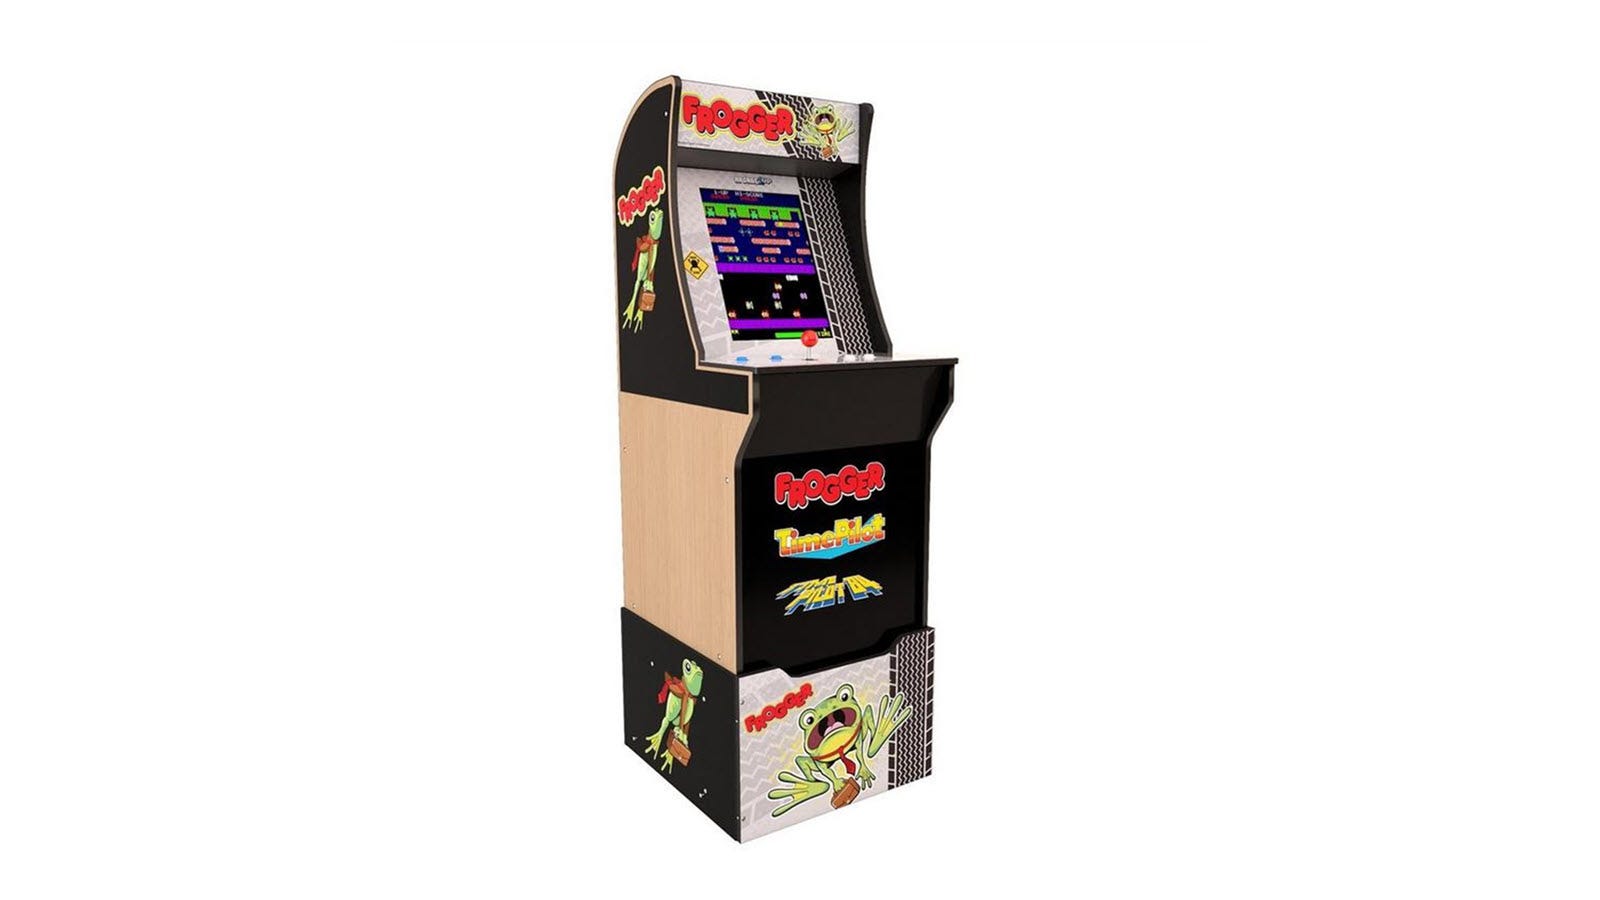 Frogger Arcade1Up-skåp med anpassningsbara spakar och en joystick.